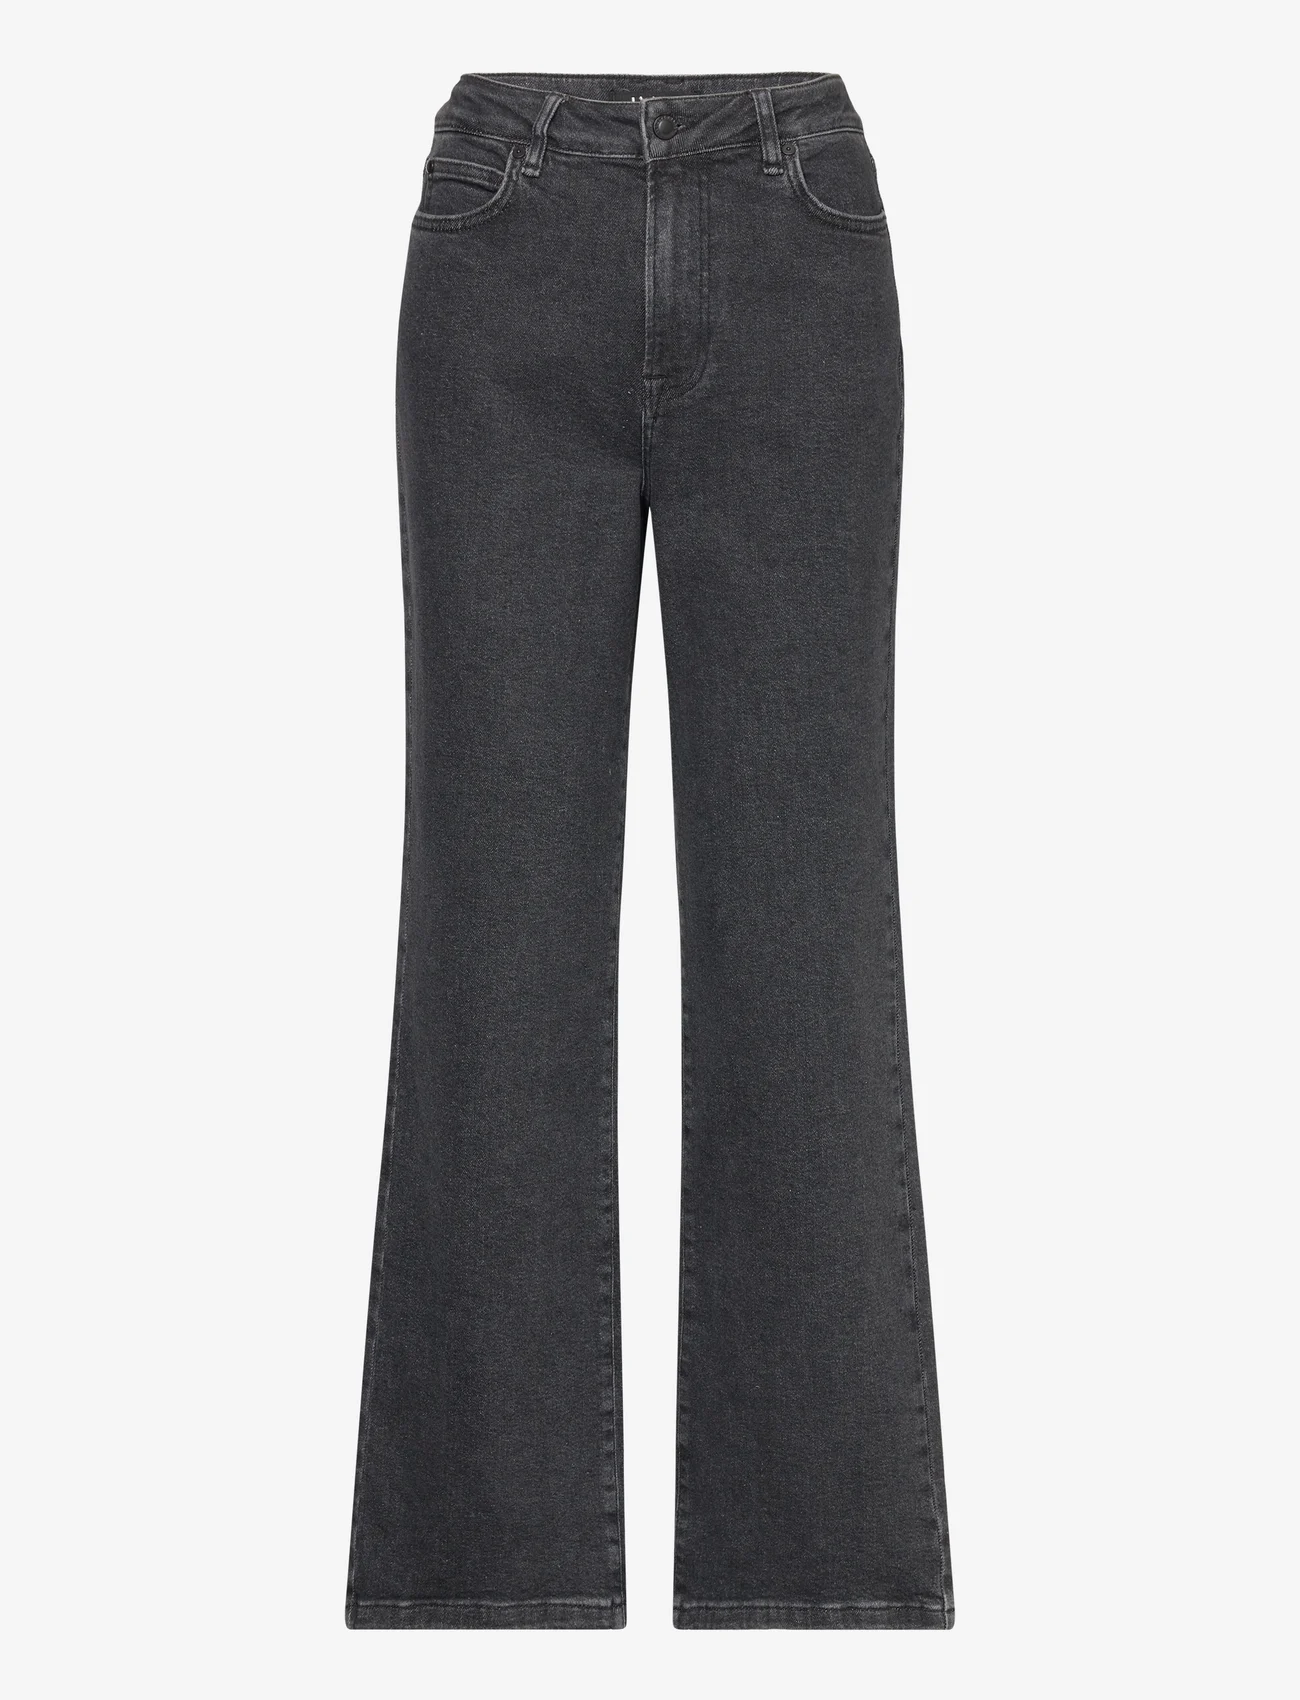 IVY Copenhagen - IVY-Mia Jeans Wash Vintage Black - sirge säärega teksad - black - 0